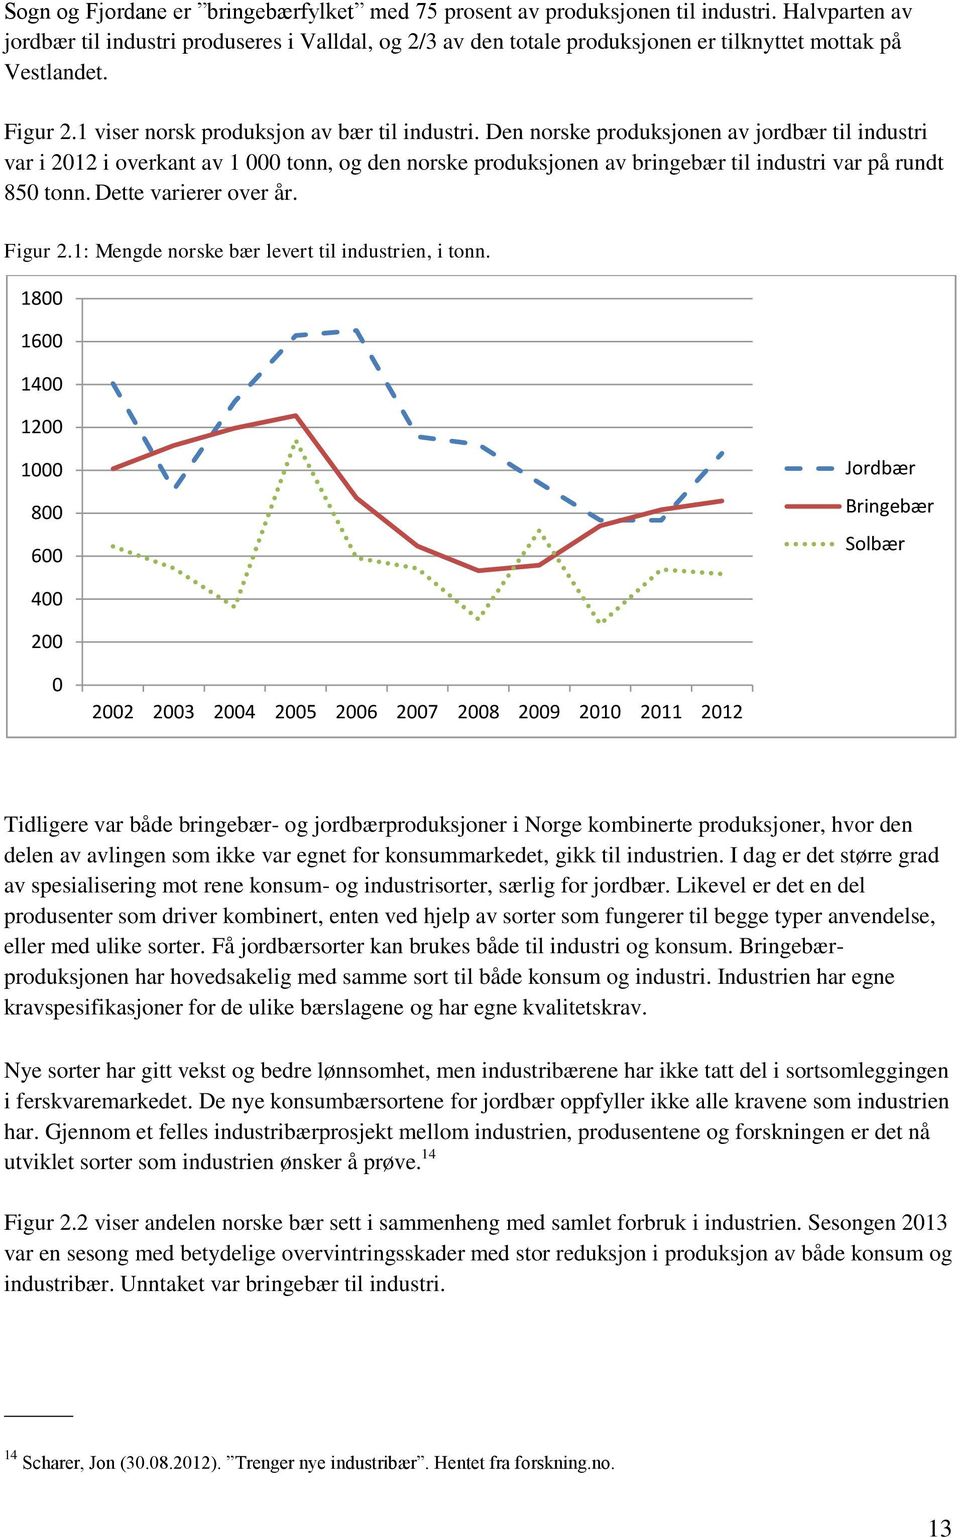 Den norske produksjonen av jordbær til industri var i 2012 i overkant av 1 000 tonn, og den norske produksjonen av bringebær til industri var på rundt 850 tonn. Dette varierer over år. Figur 2.